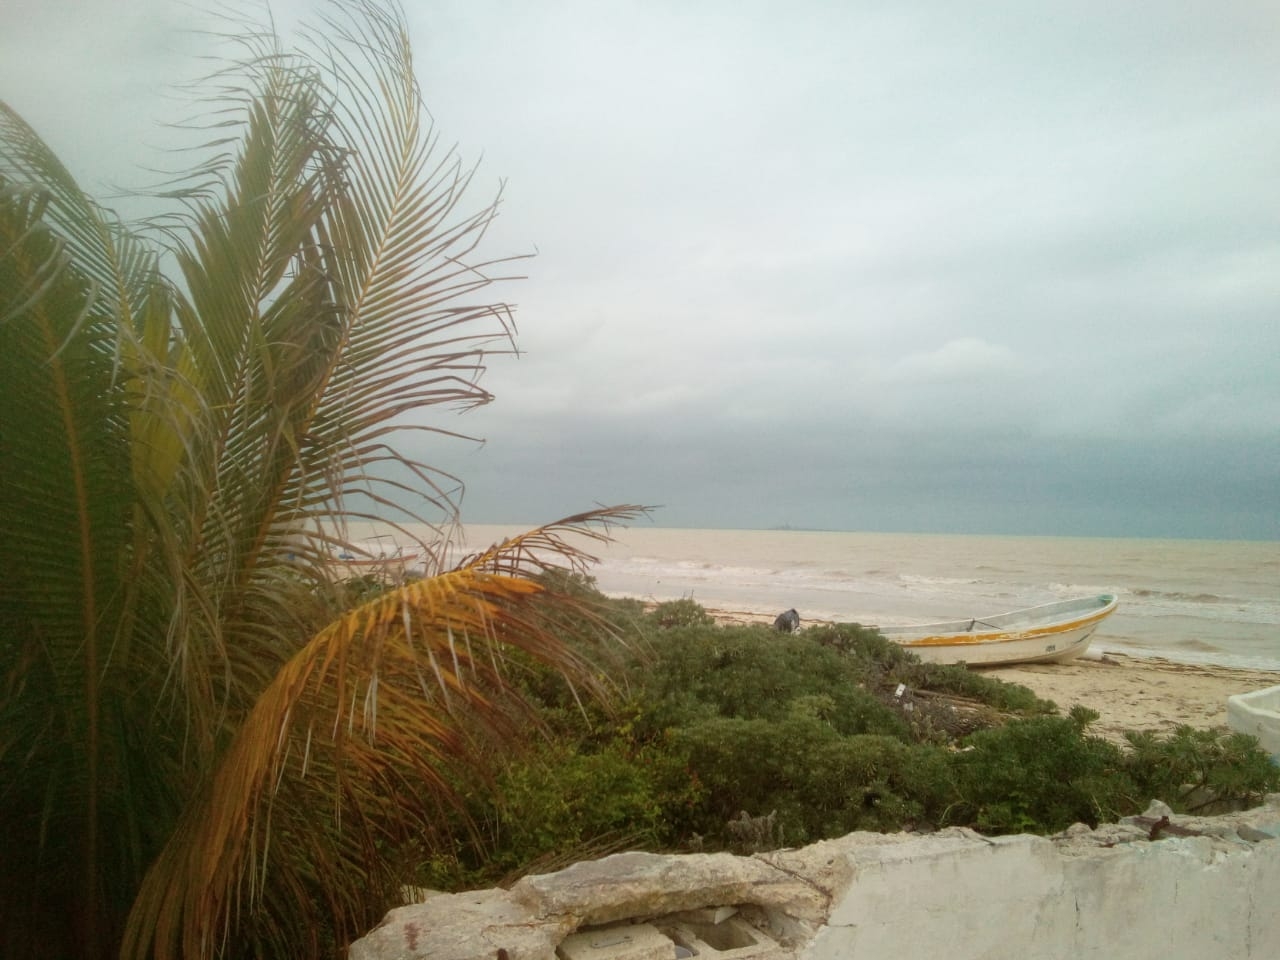 Frente frío se hizo sentir en la costa de Yucatán